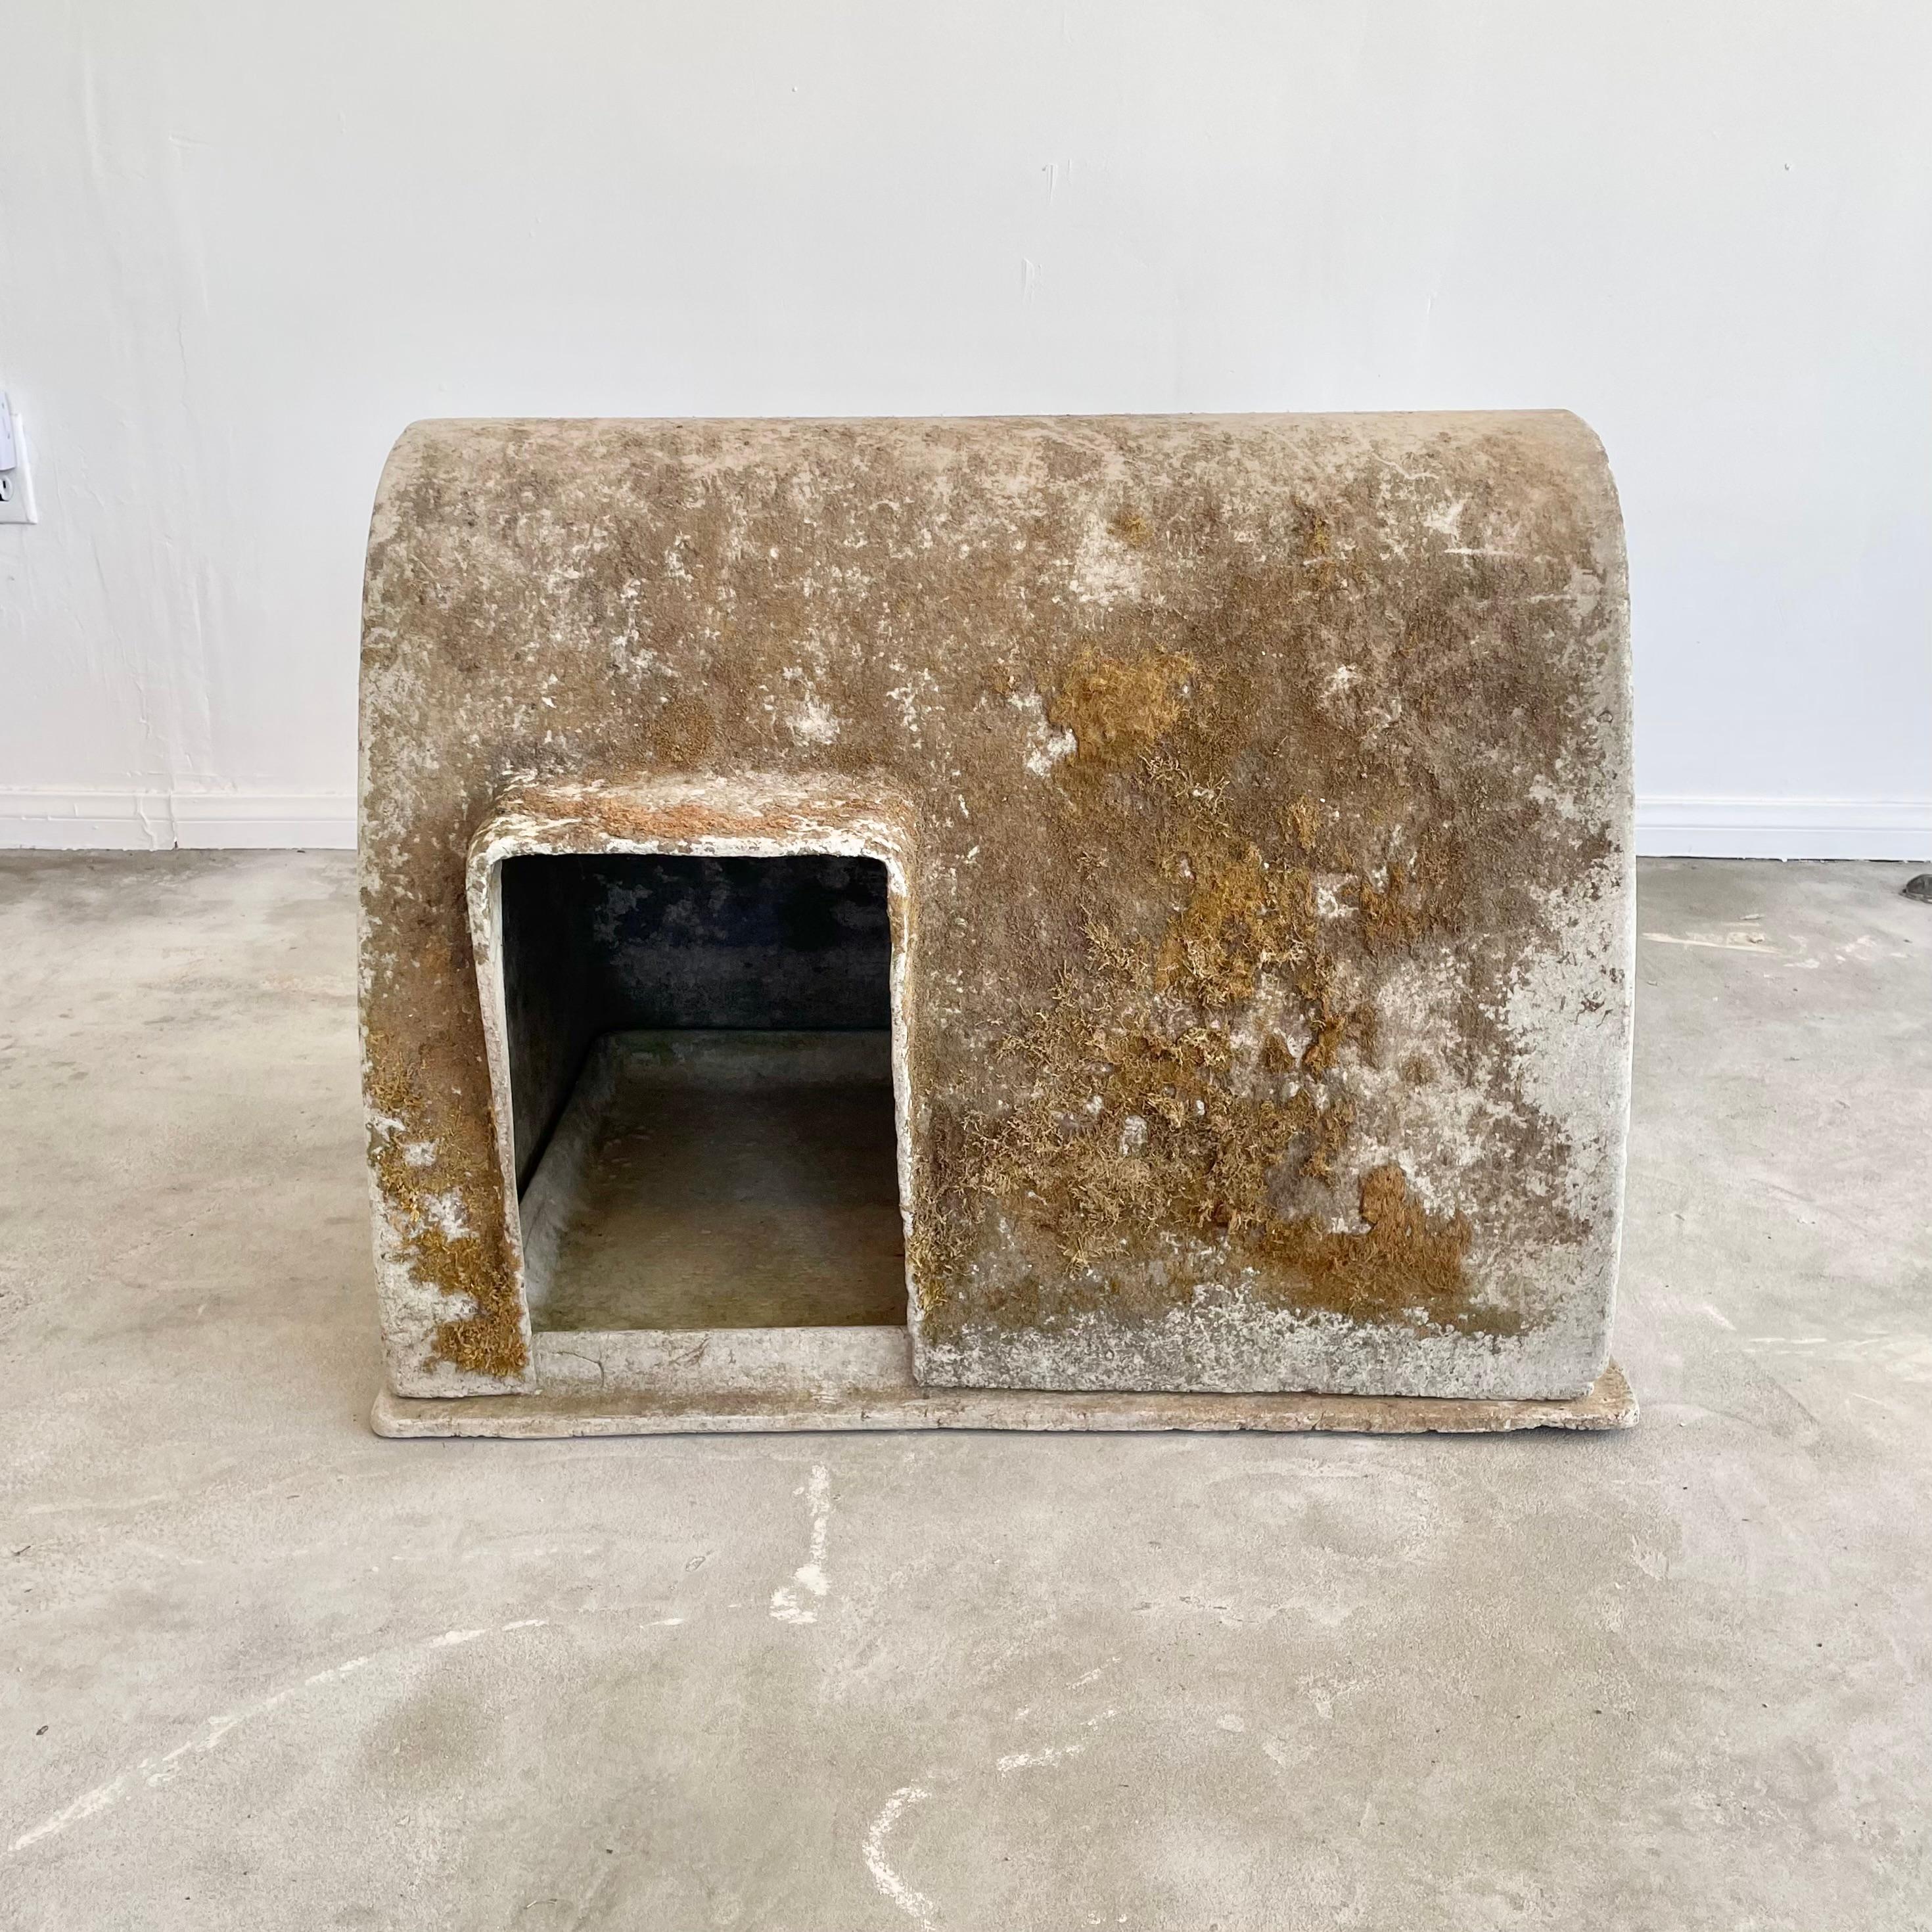 Étonnante niche industrielle pour chiens en ciment, réalisée par le designer suisse Willy Guhl pour Eternit. Taille extrêmement rare avec une patine et un lichen importants. Une petite porte pour chien se trouve en bas à gauche de la structure et